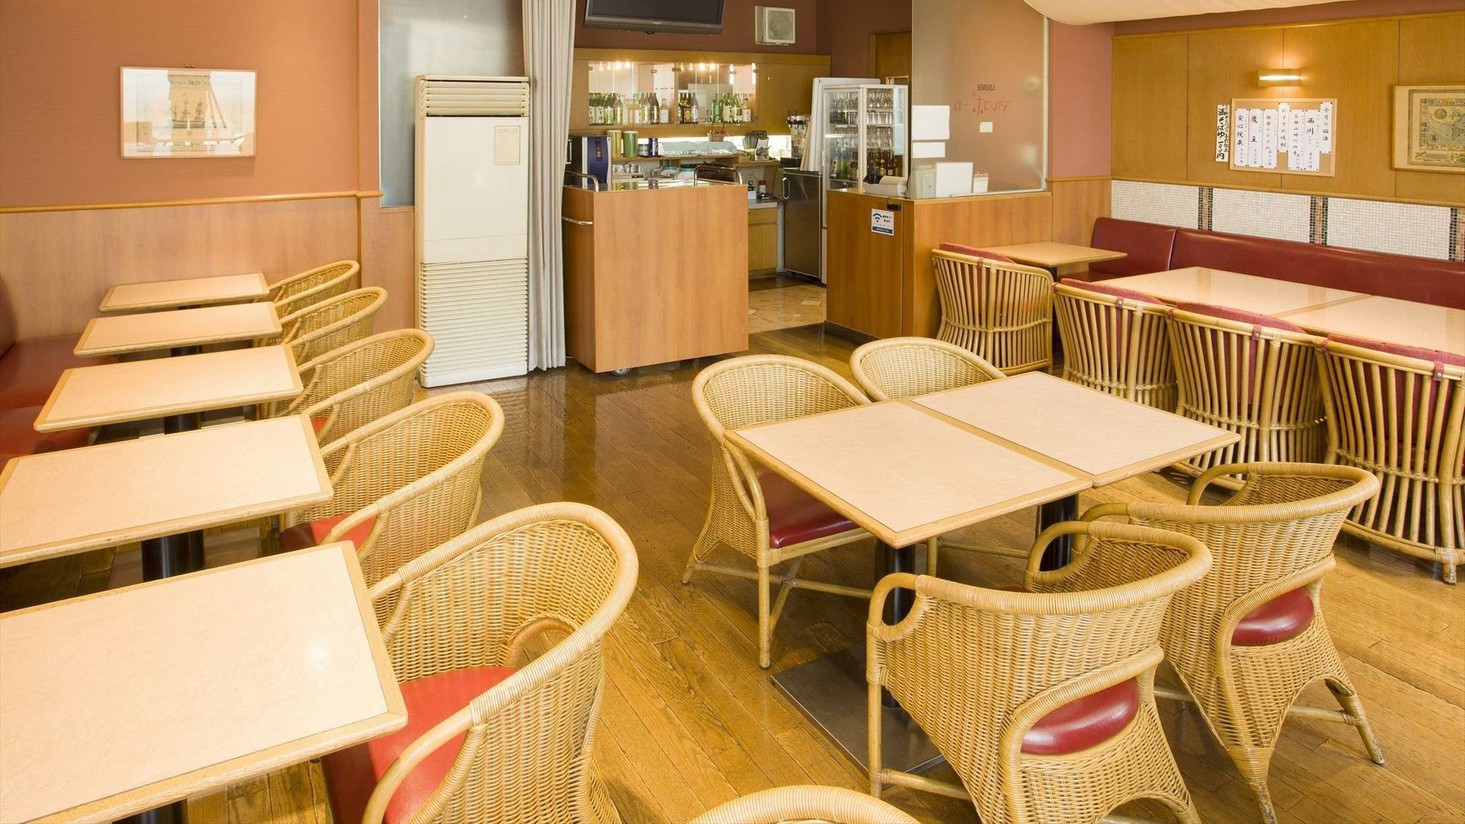 【レストラン-マルコポーロ-】朝は朝食会場、お昼はランチ、夜は居酒屋営業となります。